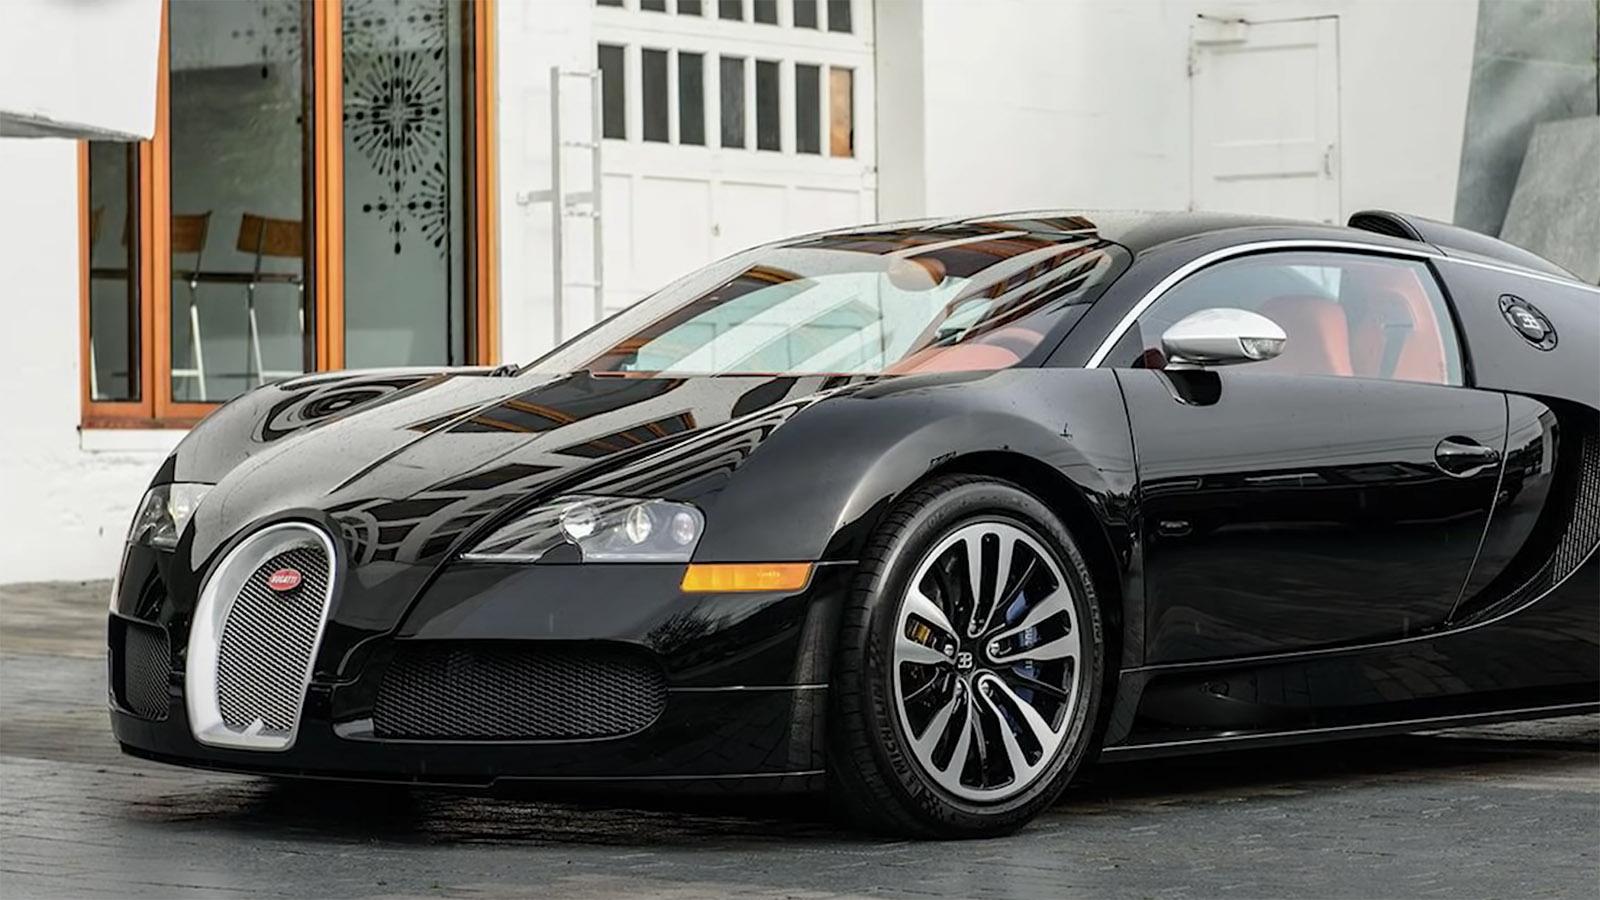 Drakes Bugatti Veyron